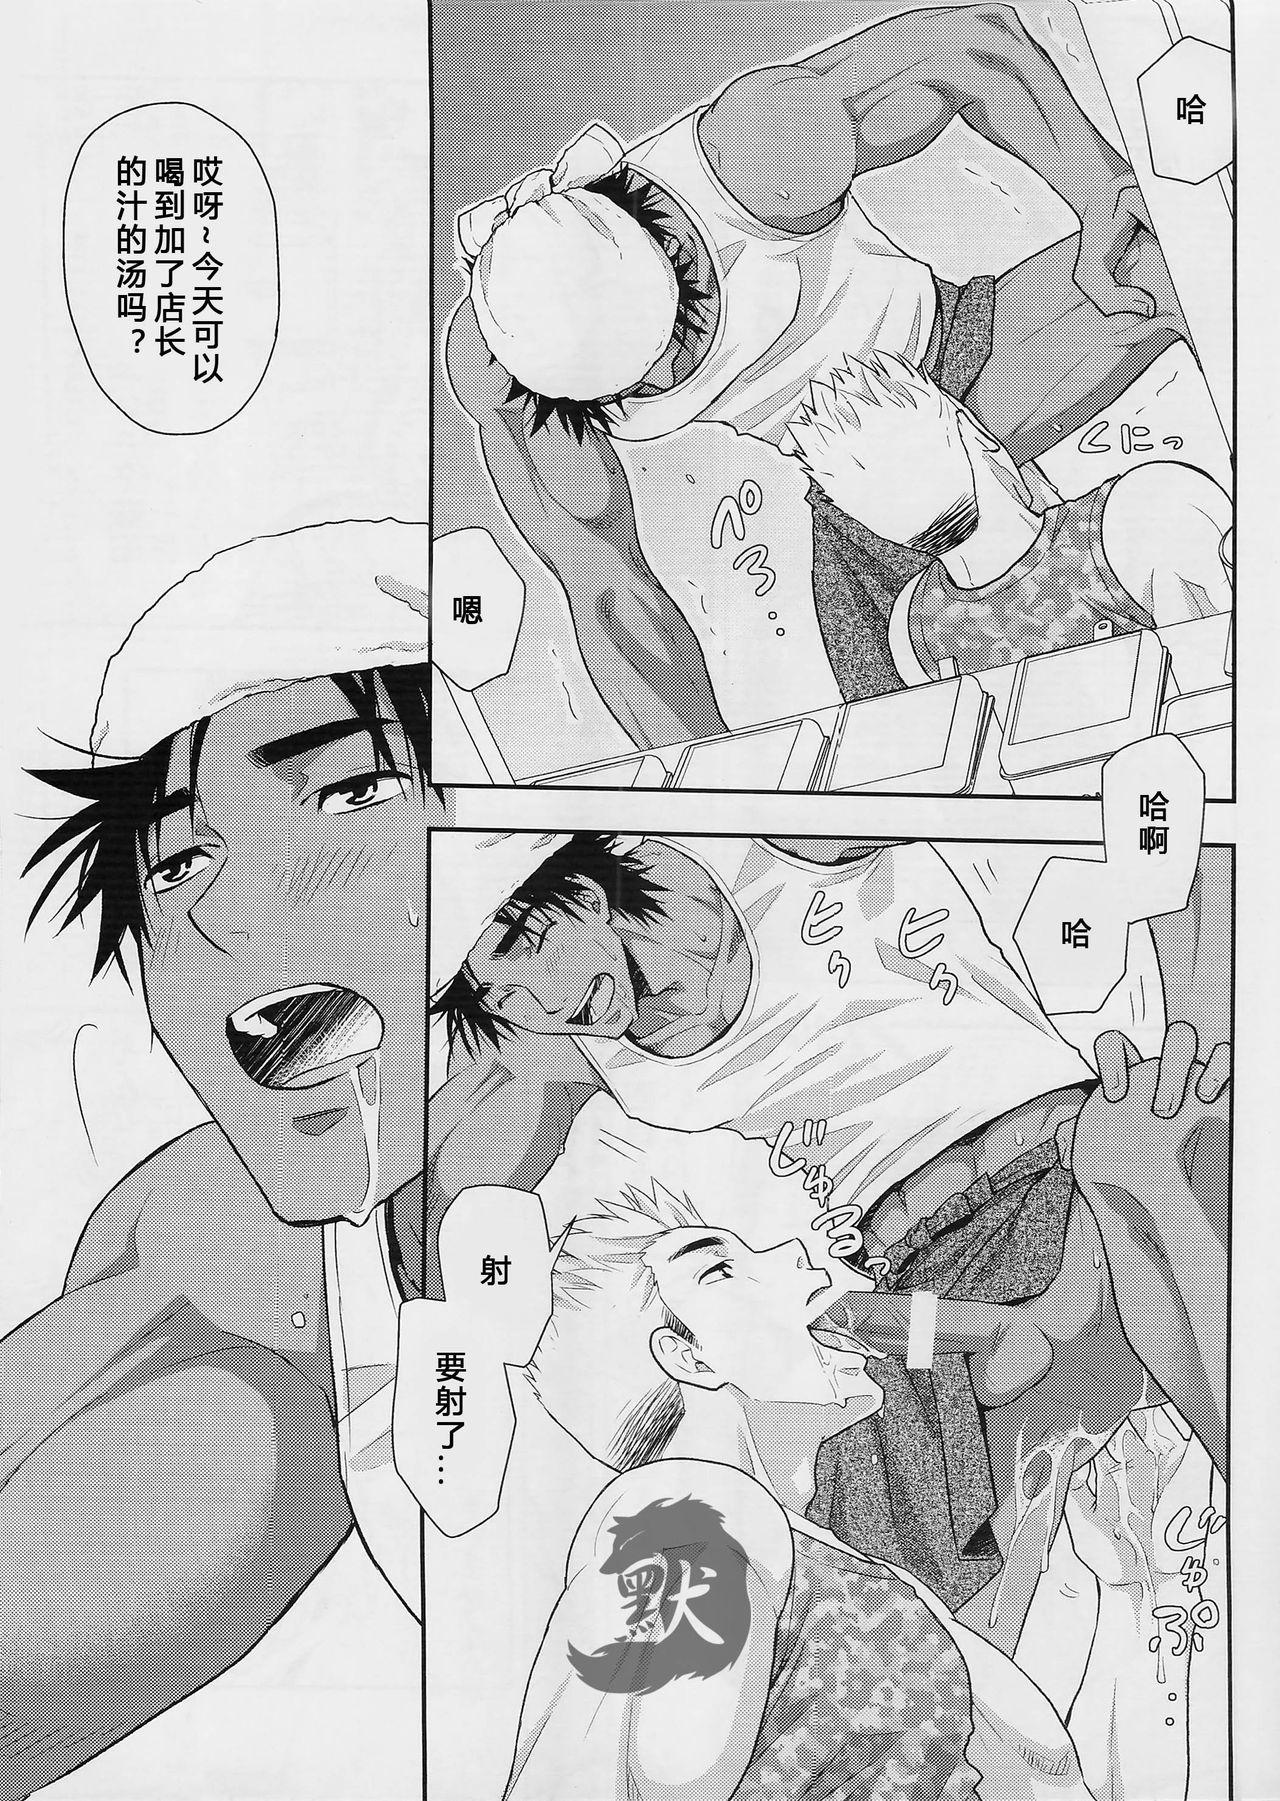 Exibicionismo Shiru no Nominokoshi wa Genkin desu. Chacal - Page 9